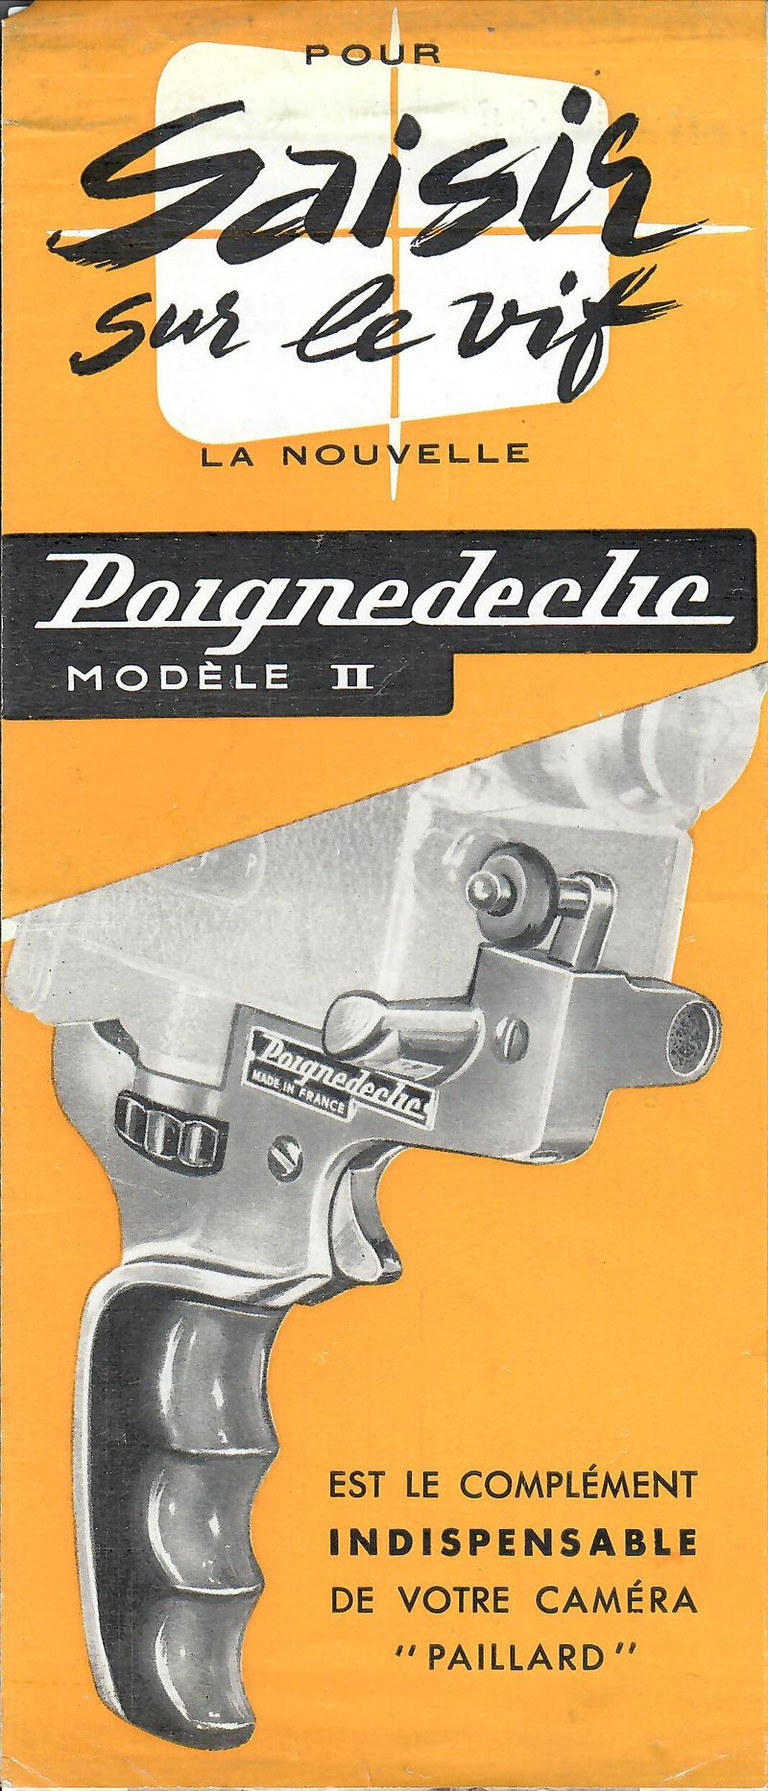 Dépliant Poignedeclic Modèle II - 6 pages - mars 1952